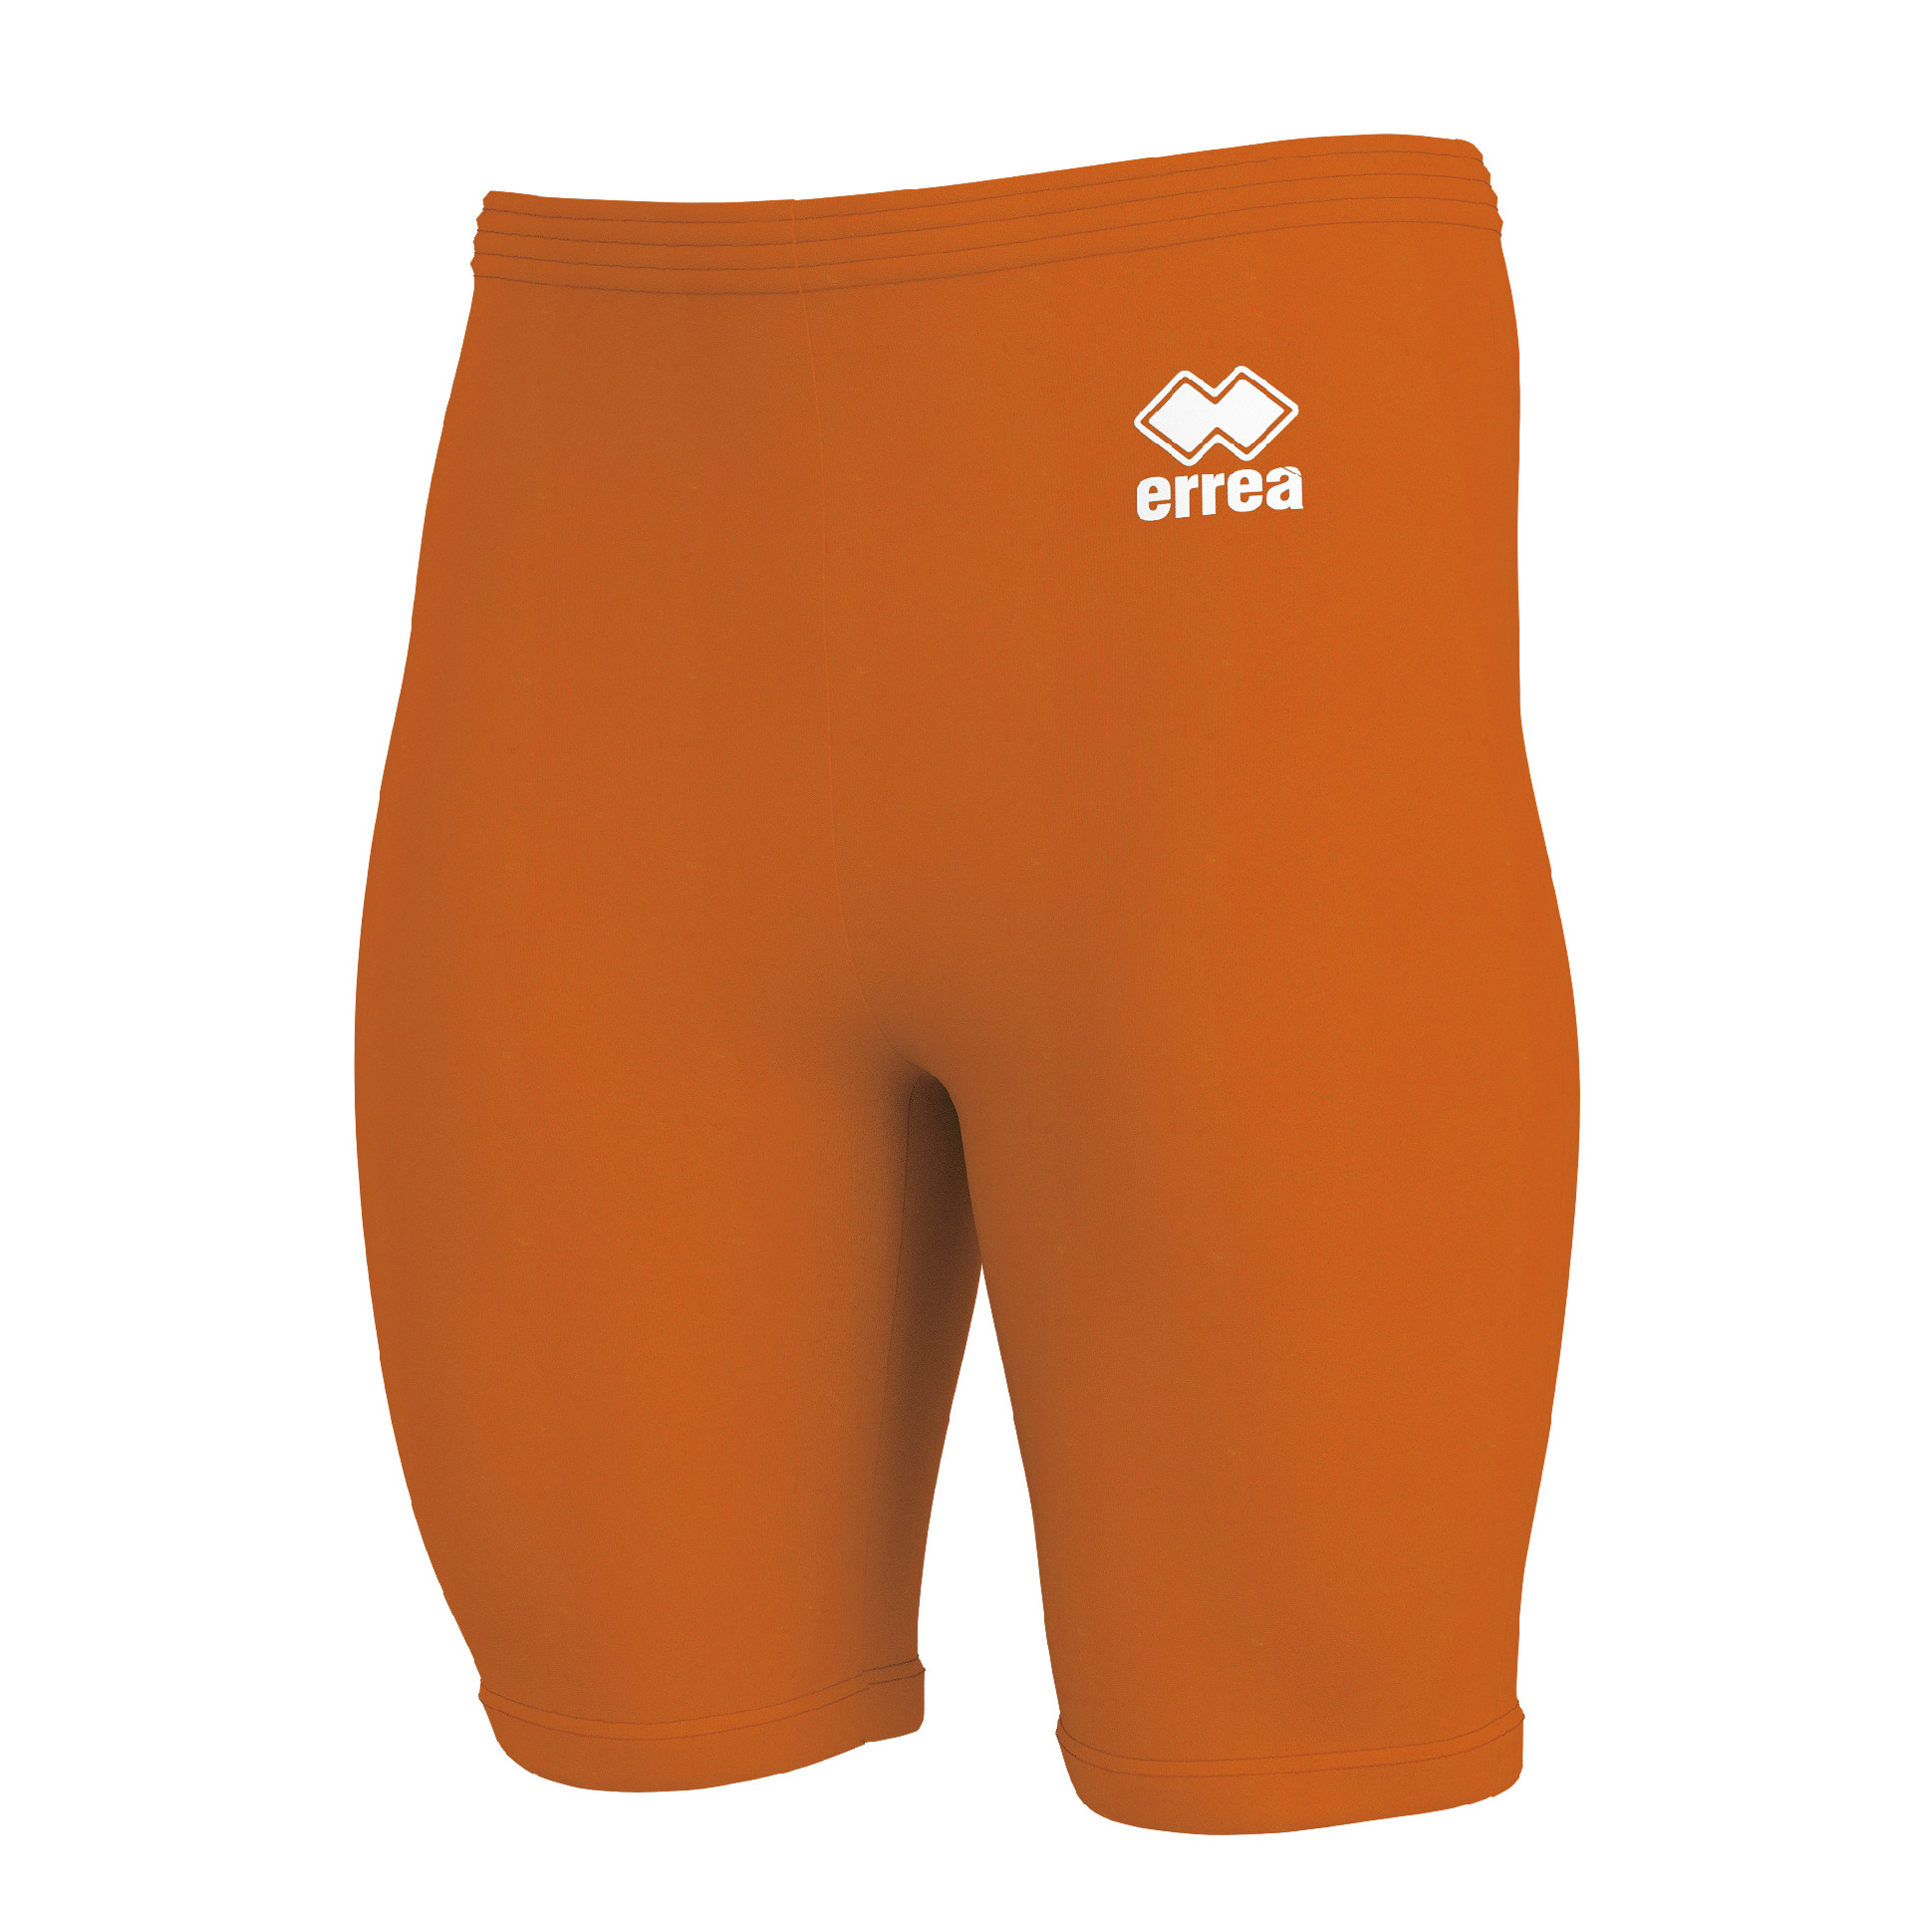 ERREA spodní kompresní šortky DAWE BARVA: oranžová, Velikost: L / XL